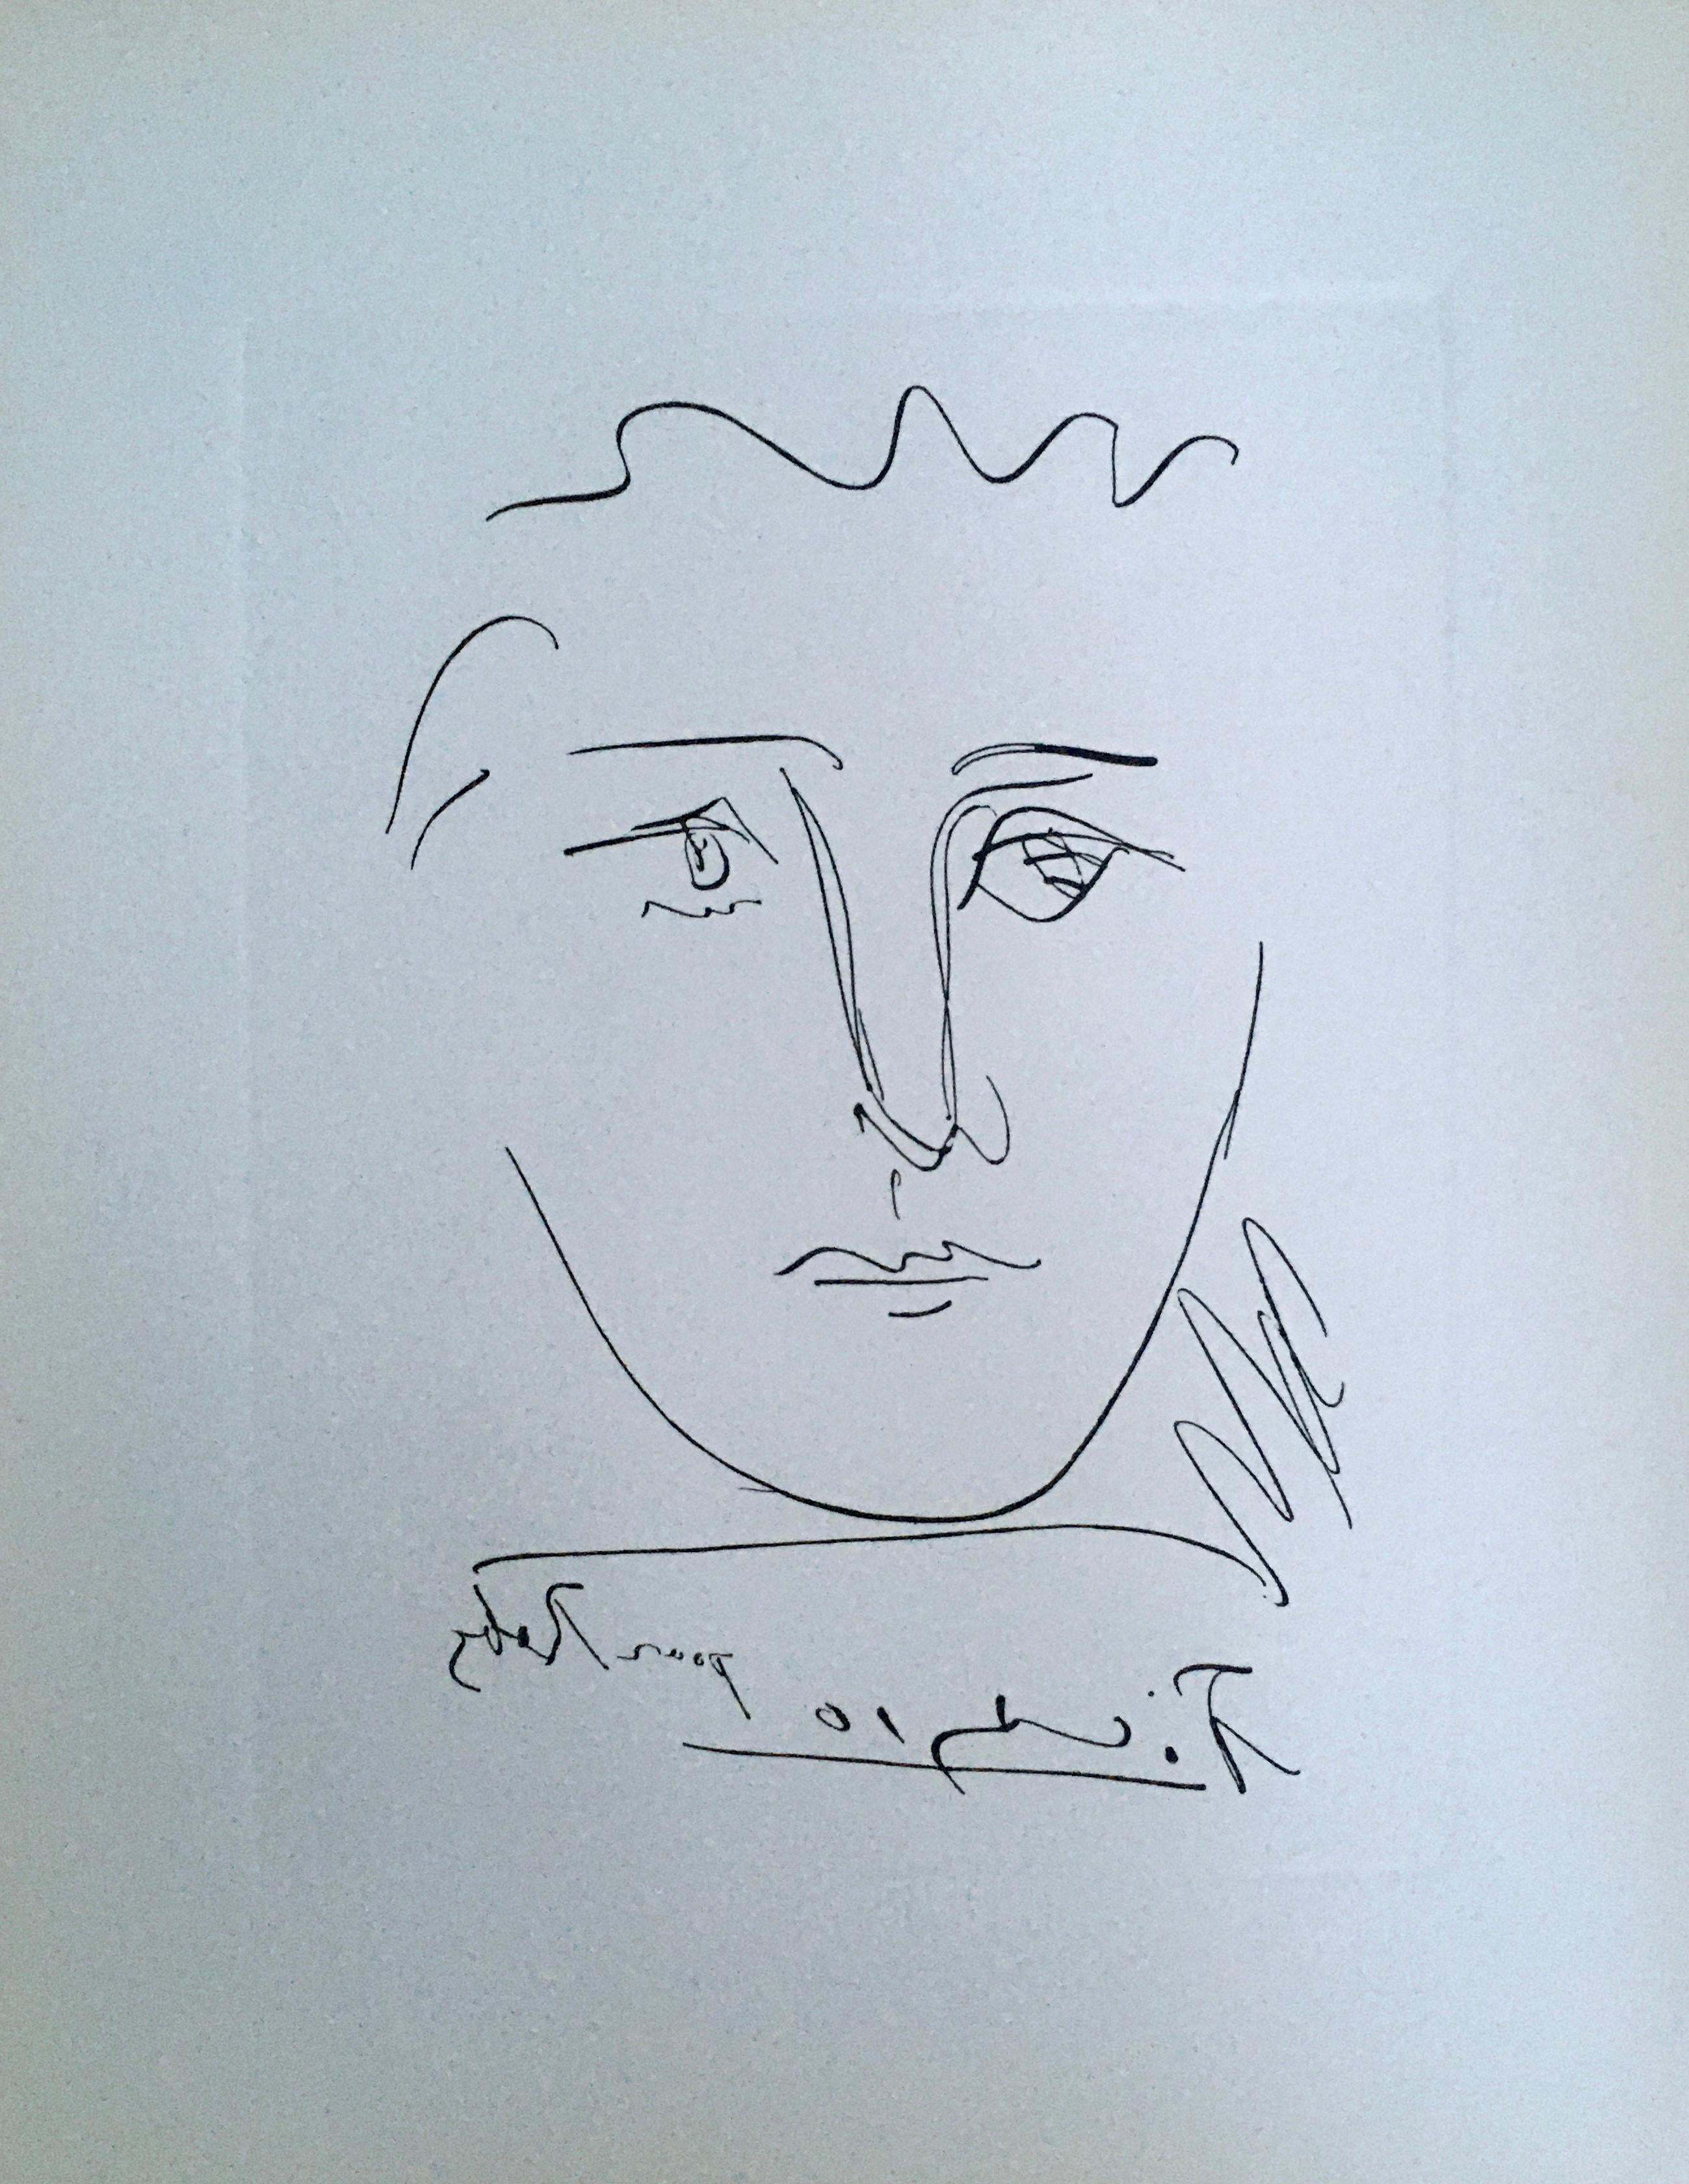 Pour Roby (L’Age de Soleil 1950), Bloch 680 - Print by Pablo Picasso